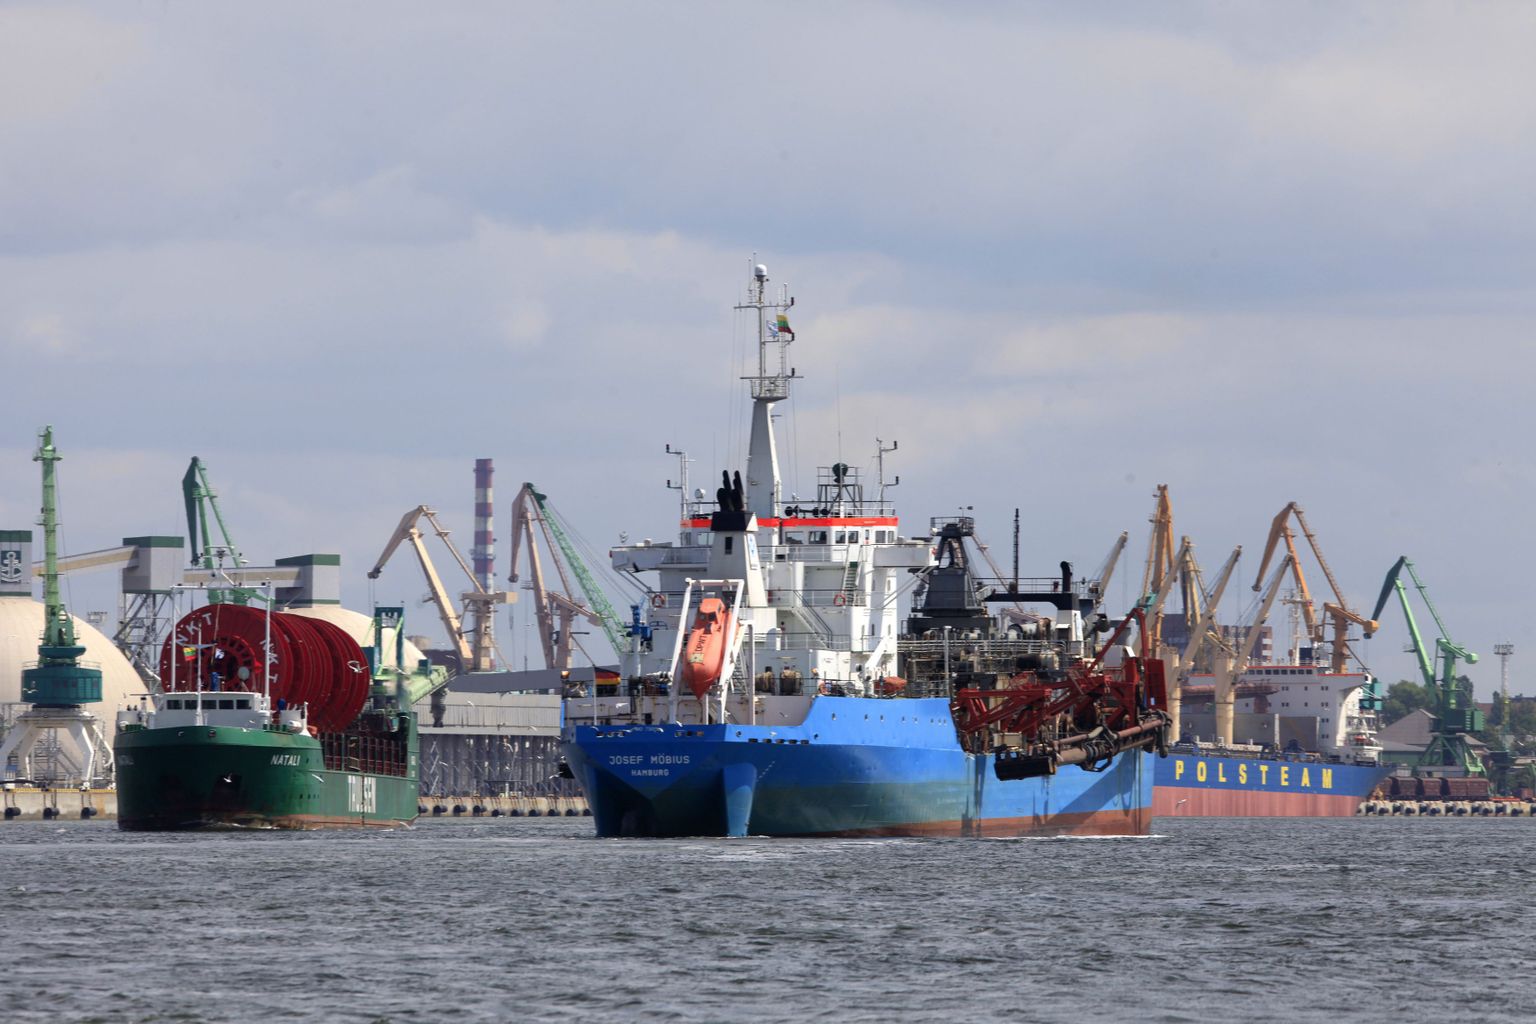 Klaipeda sadam võib keelduda Vene laevade vastuvõtmisest.